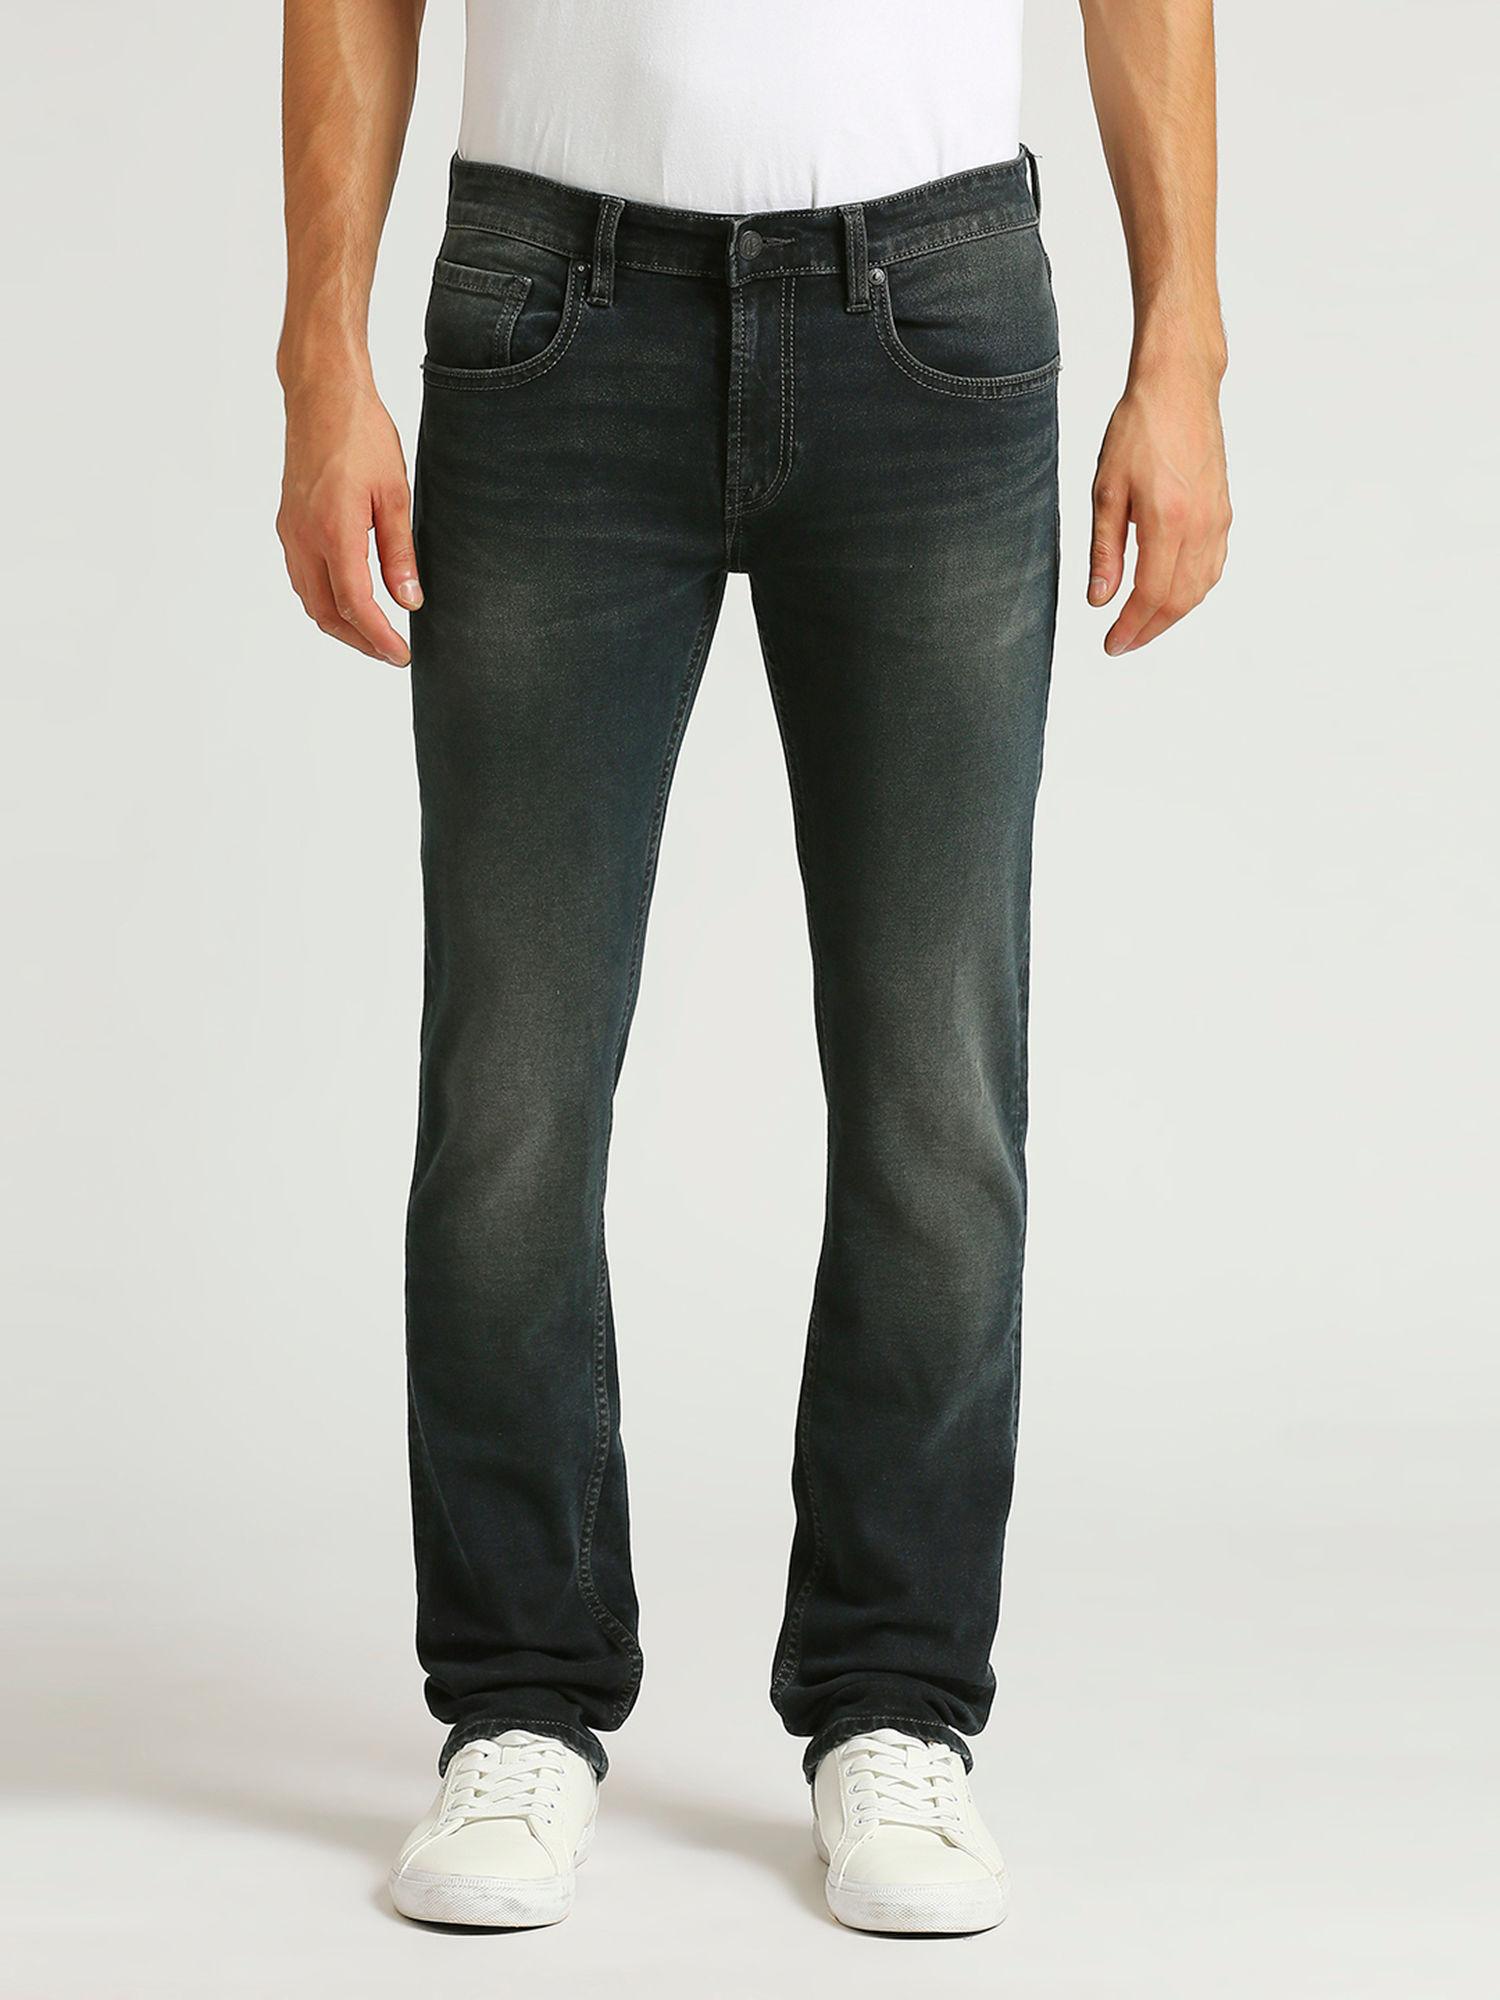 vapour-slim-fit-mid-waist-jeans